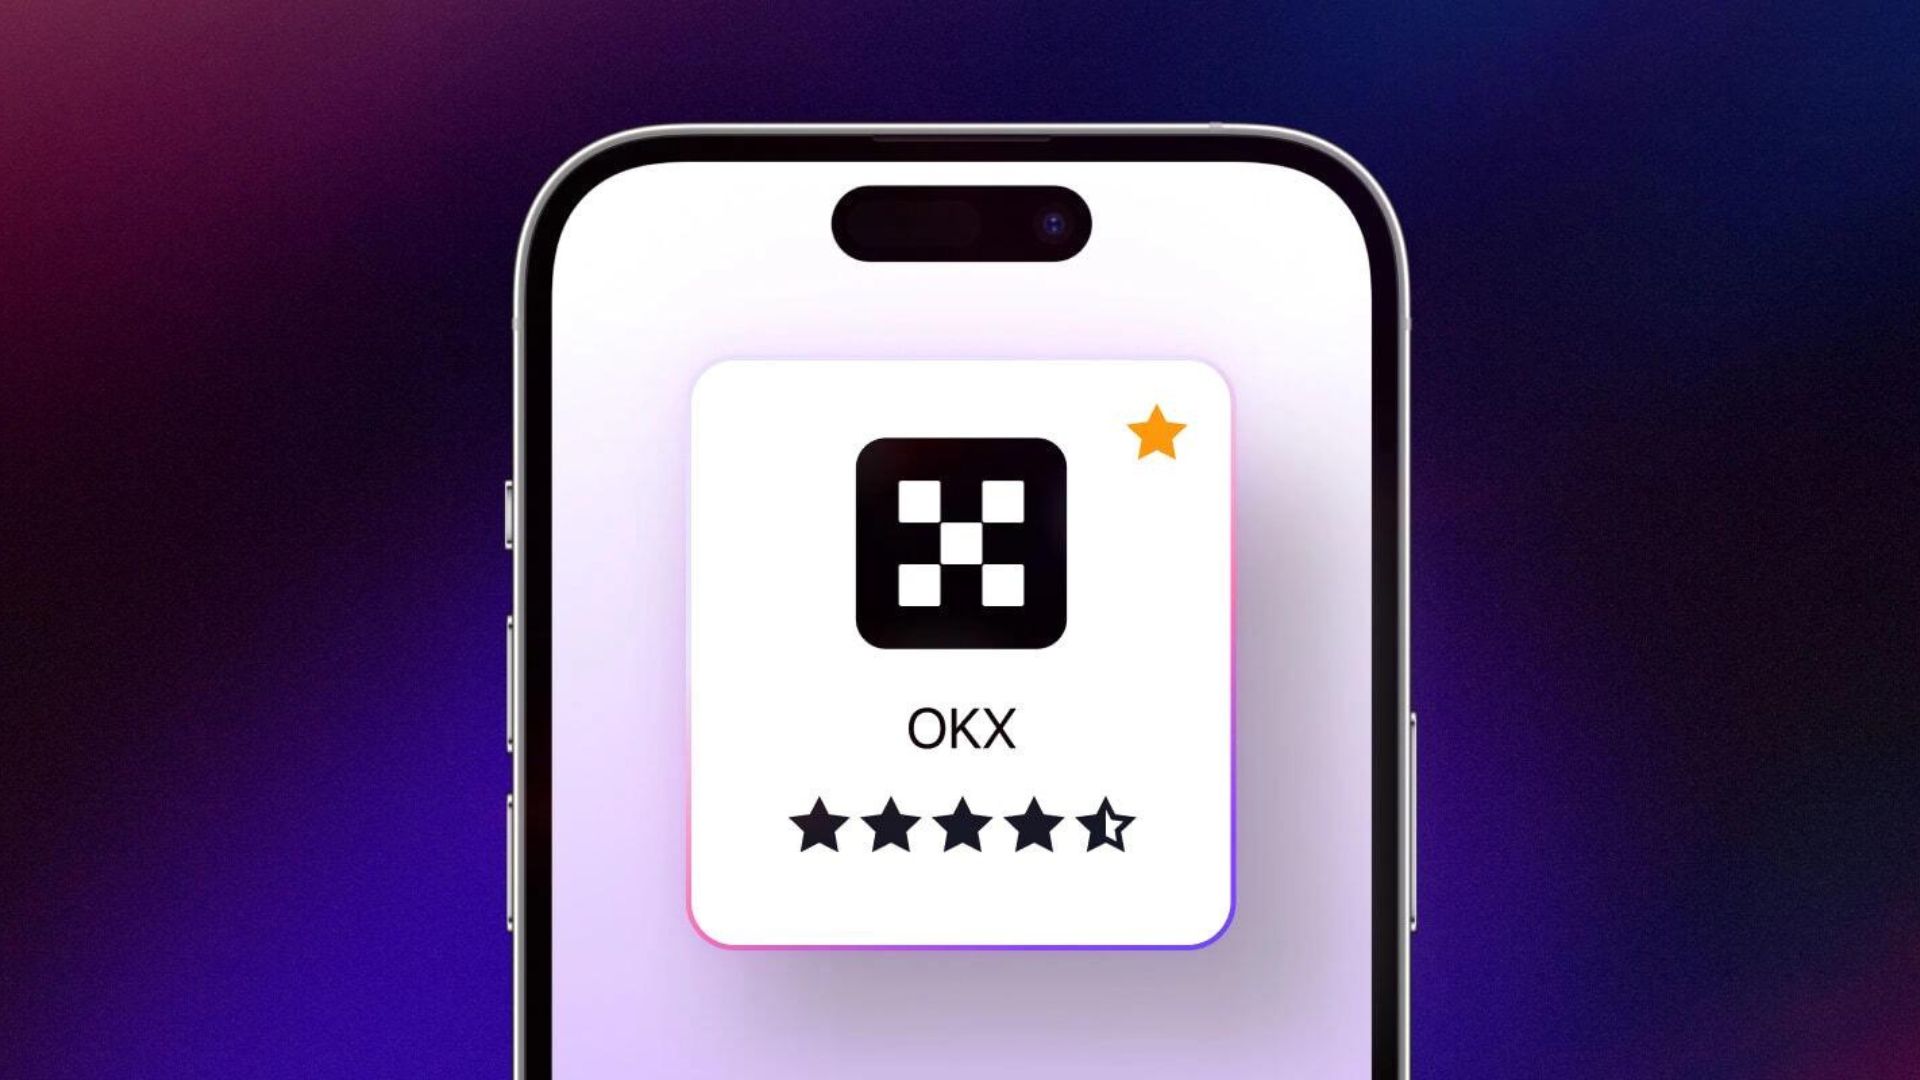 Tải app và đăng kí tài khoản OKX trên điện thoại